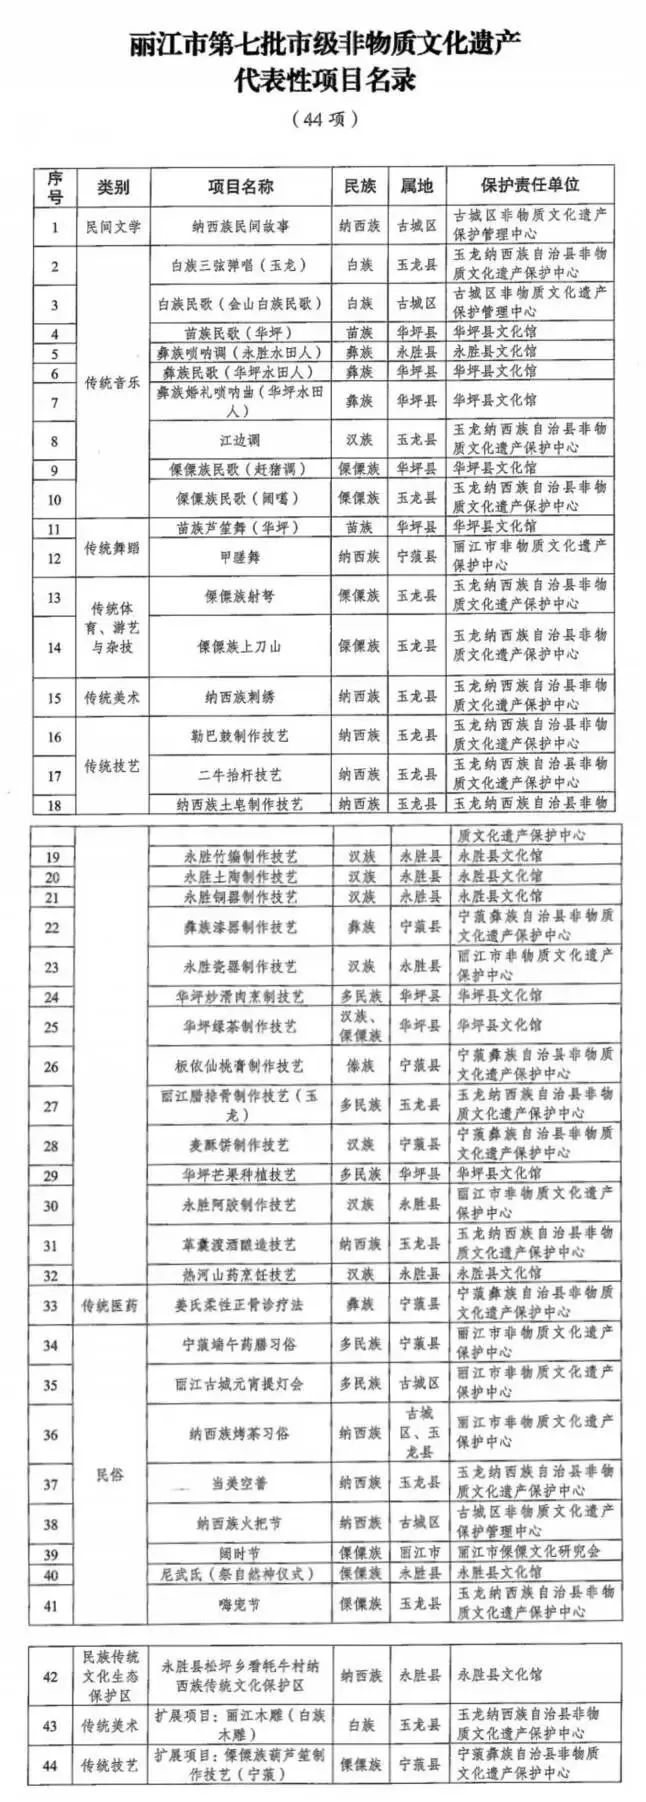 丽江市公布44项市级非物质文化遗产名录.jpg